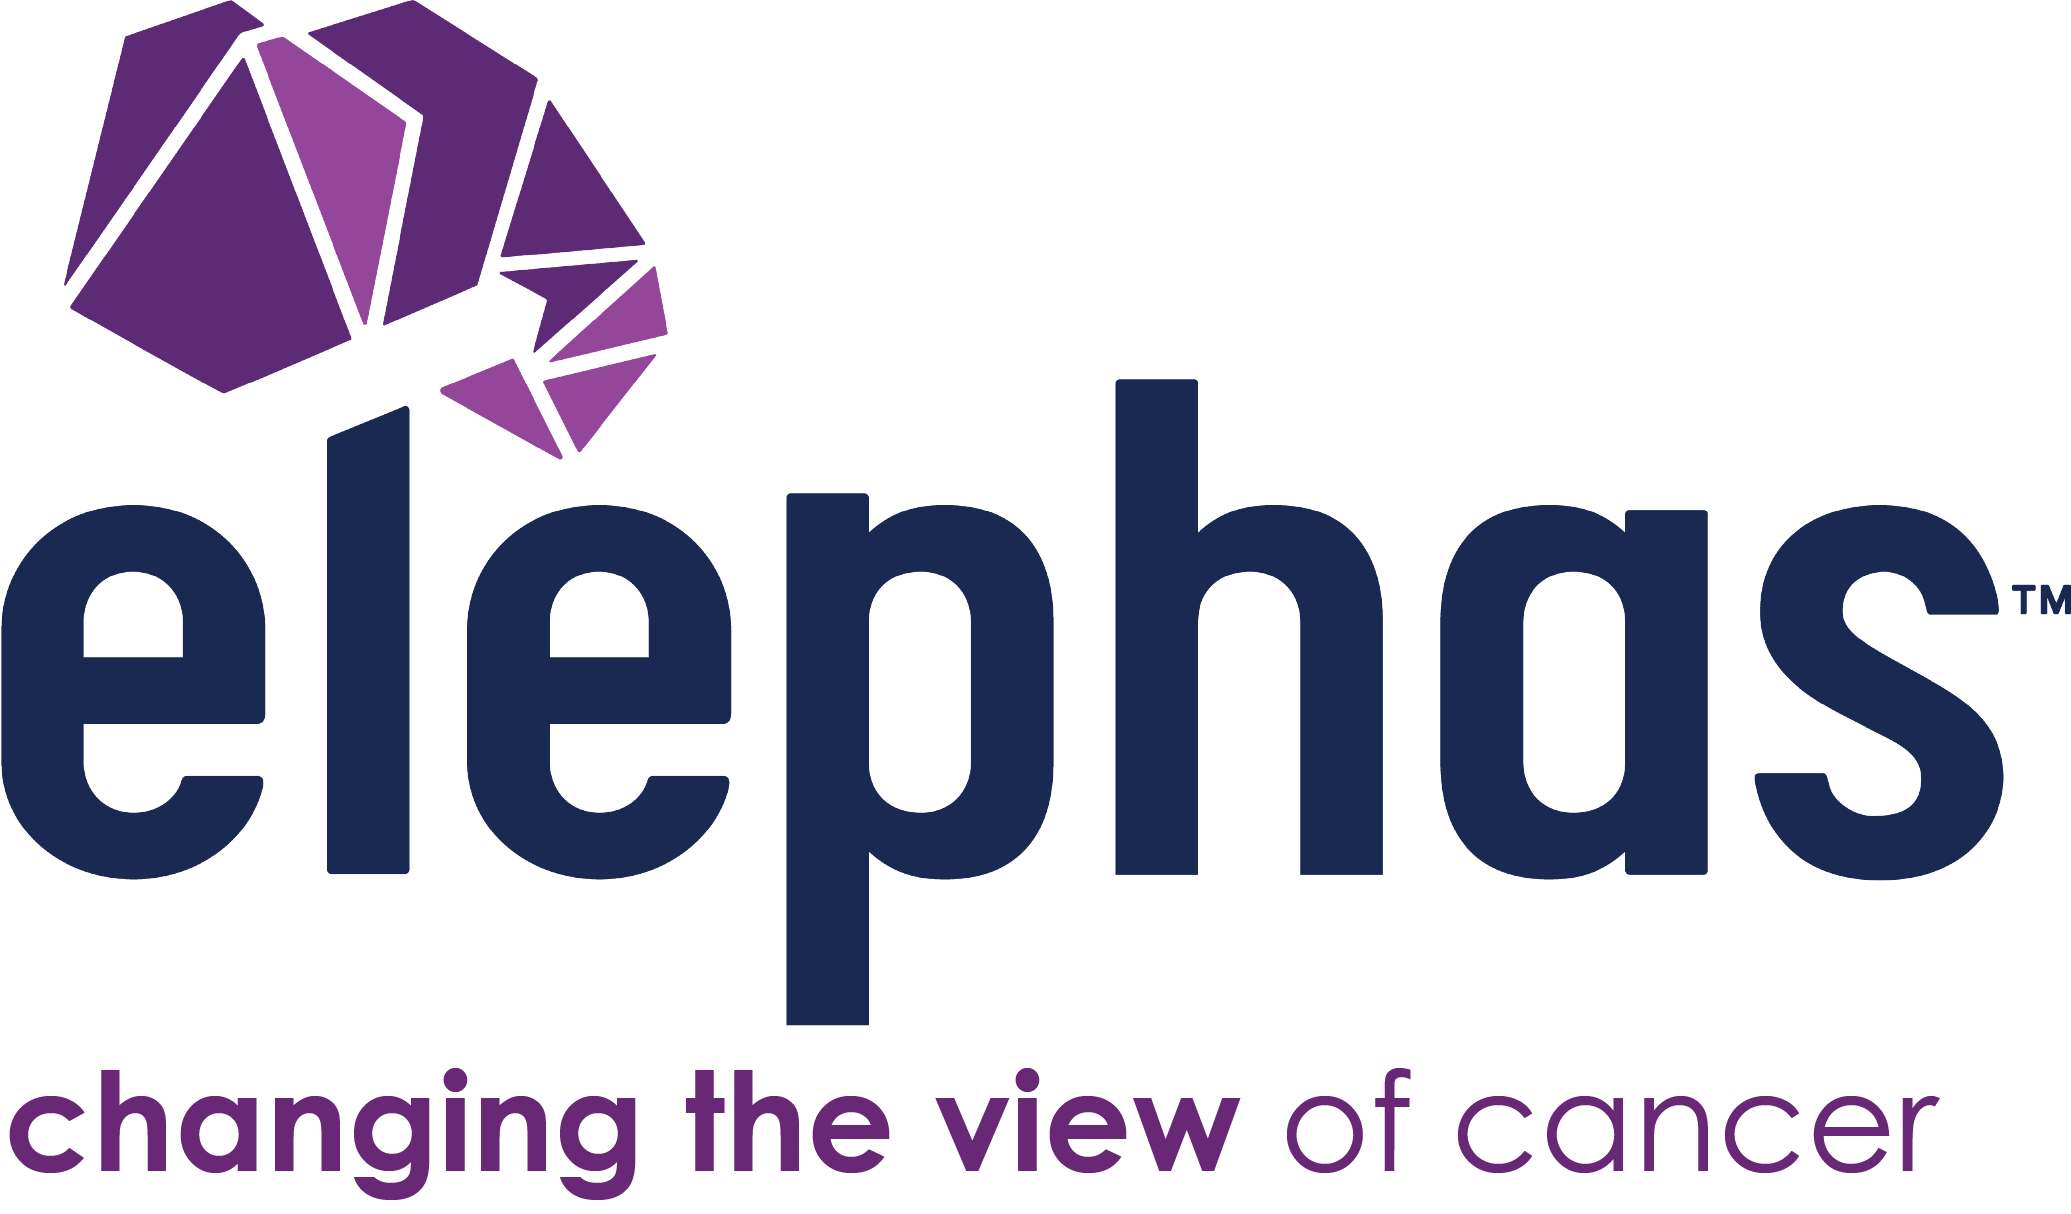 Elephas Logo